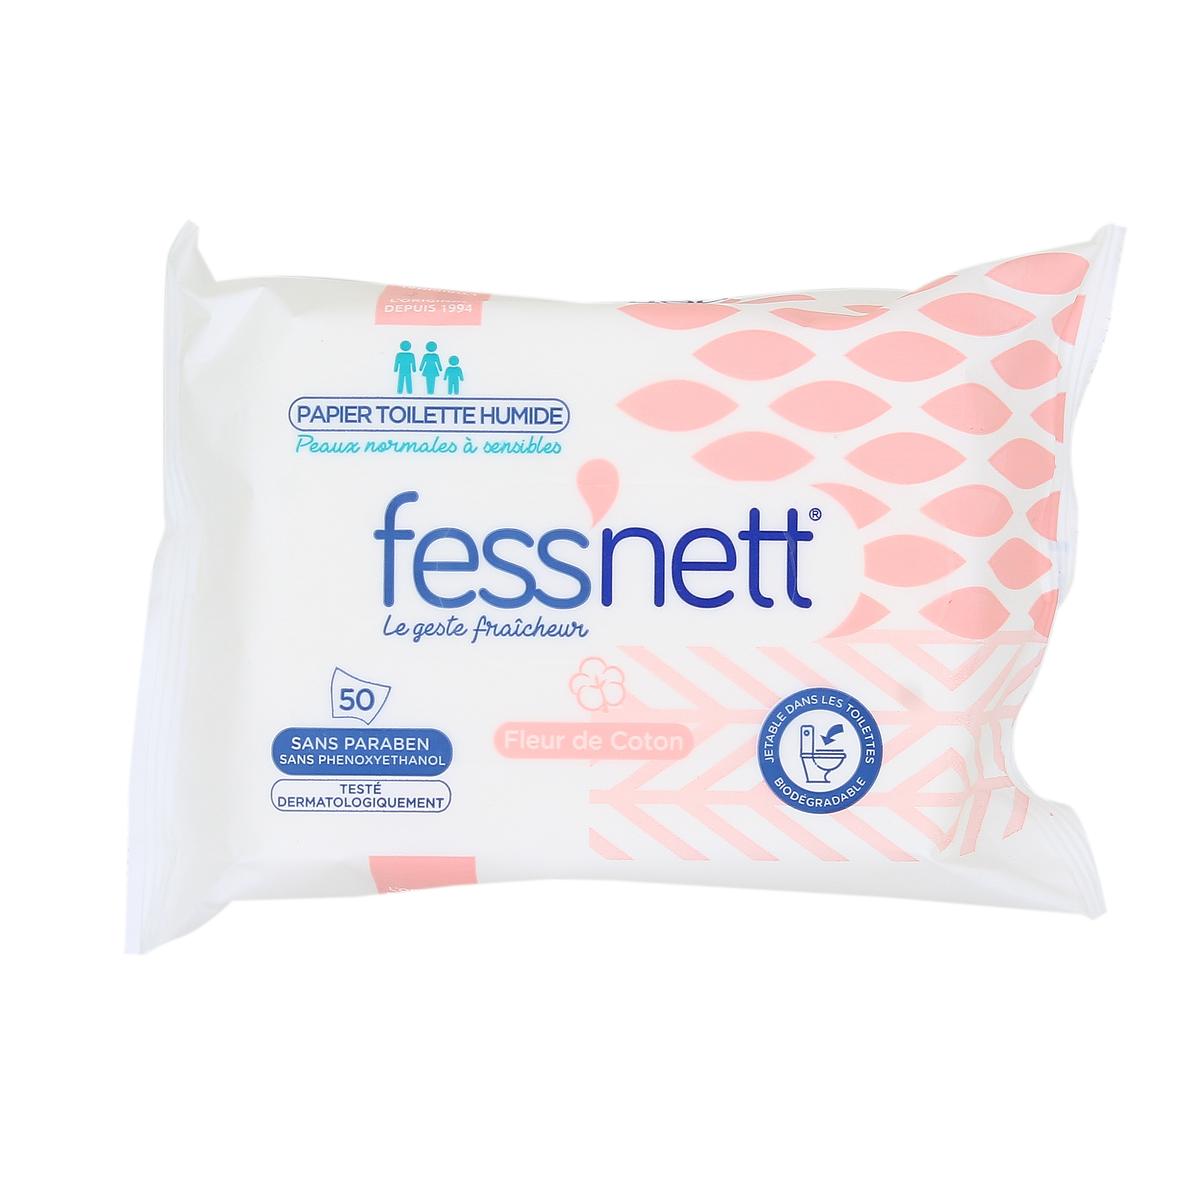 Fess'nett - Papier Toilette Humide Fleur de Coton x50 - Formule testée  dermatologiquement 0% parabène 0% phenoxyethanol - Pour Peaux Normales à